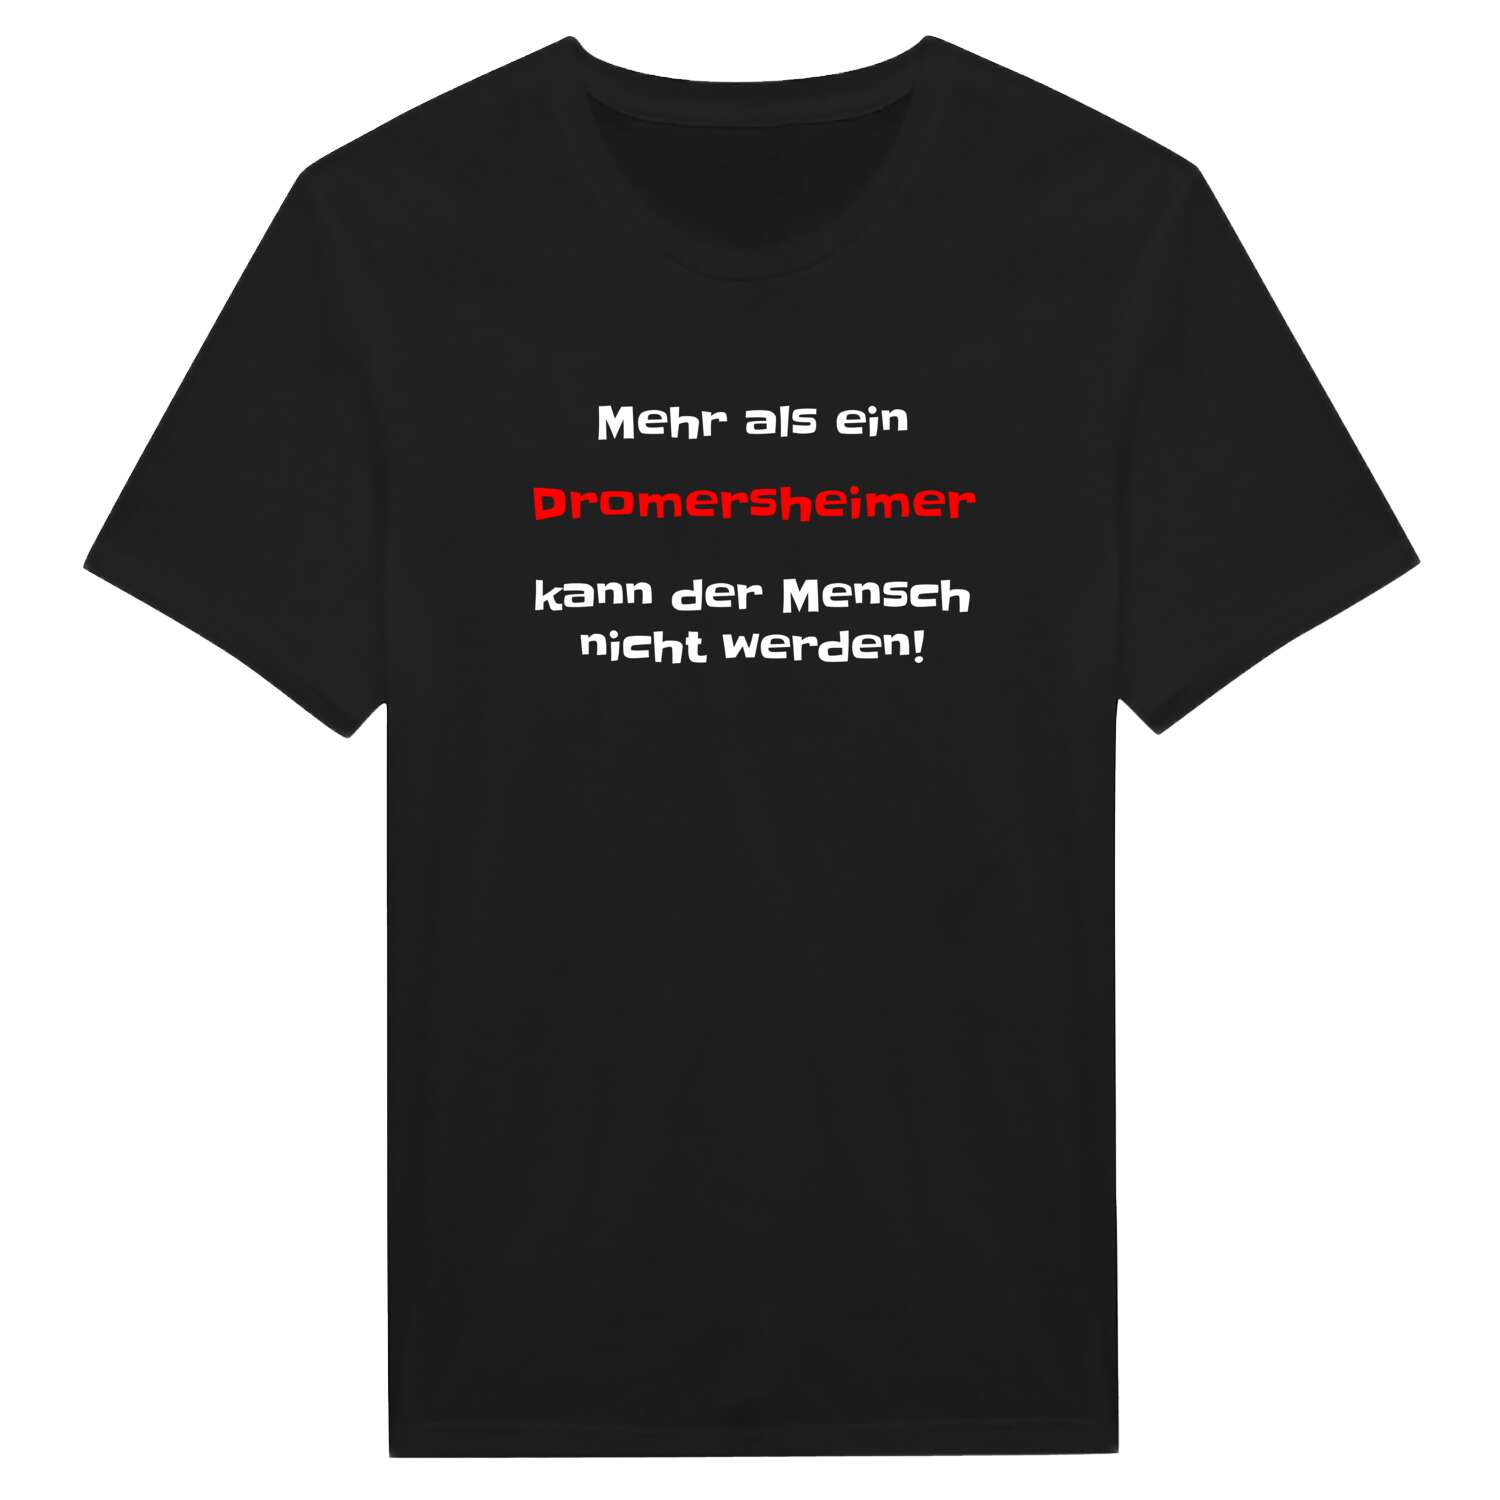 Dromersheim T-Shirt »Mehr als ein«